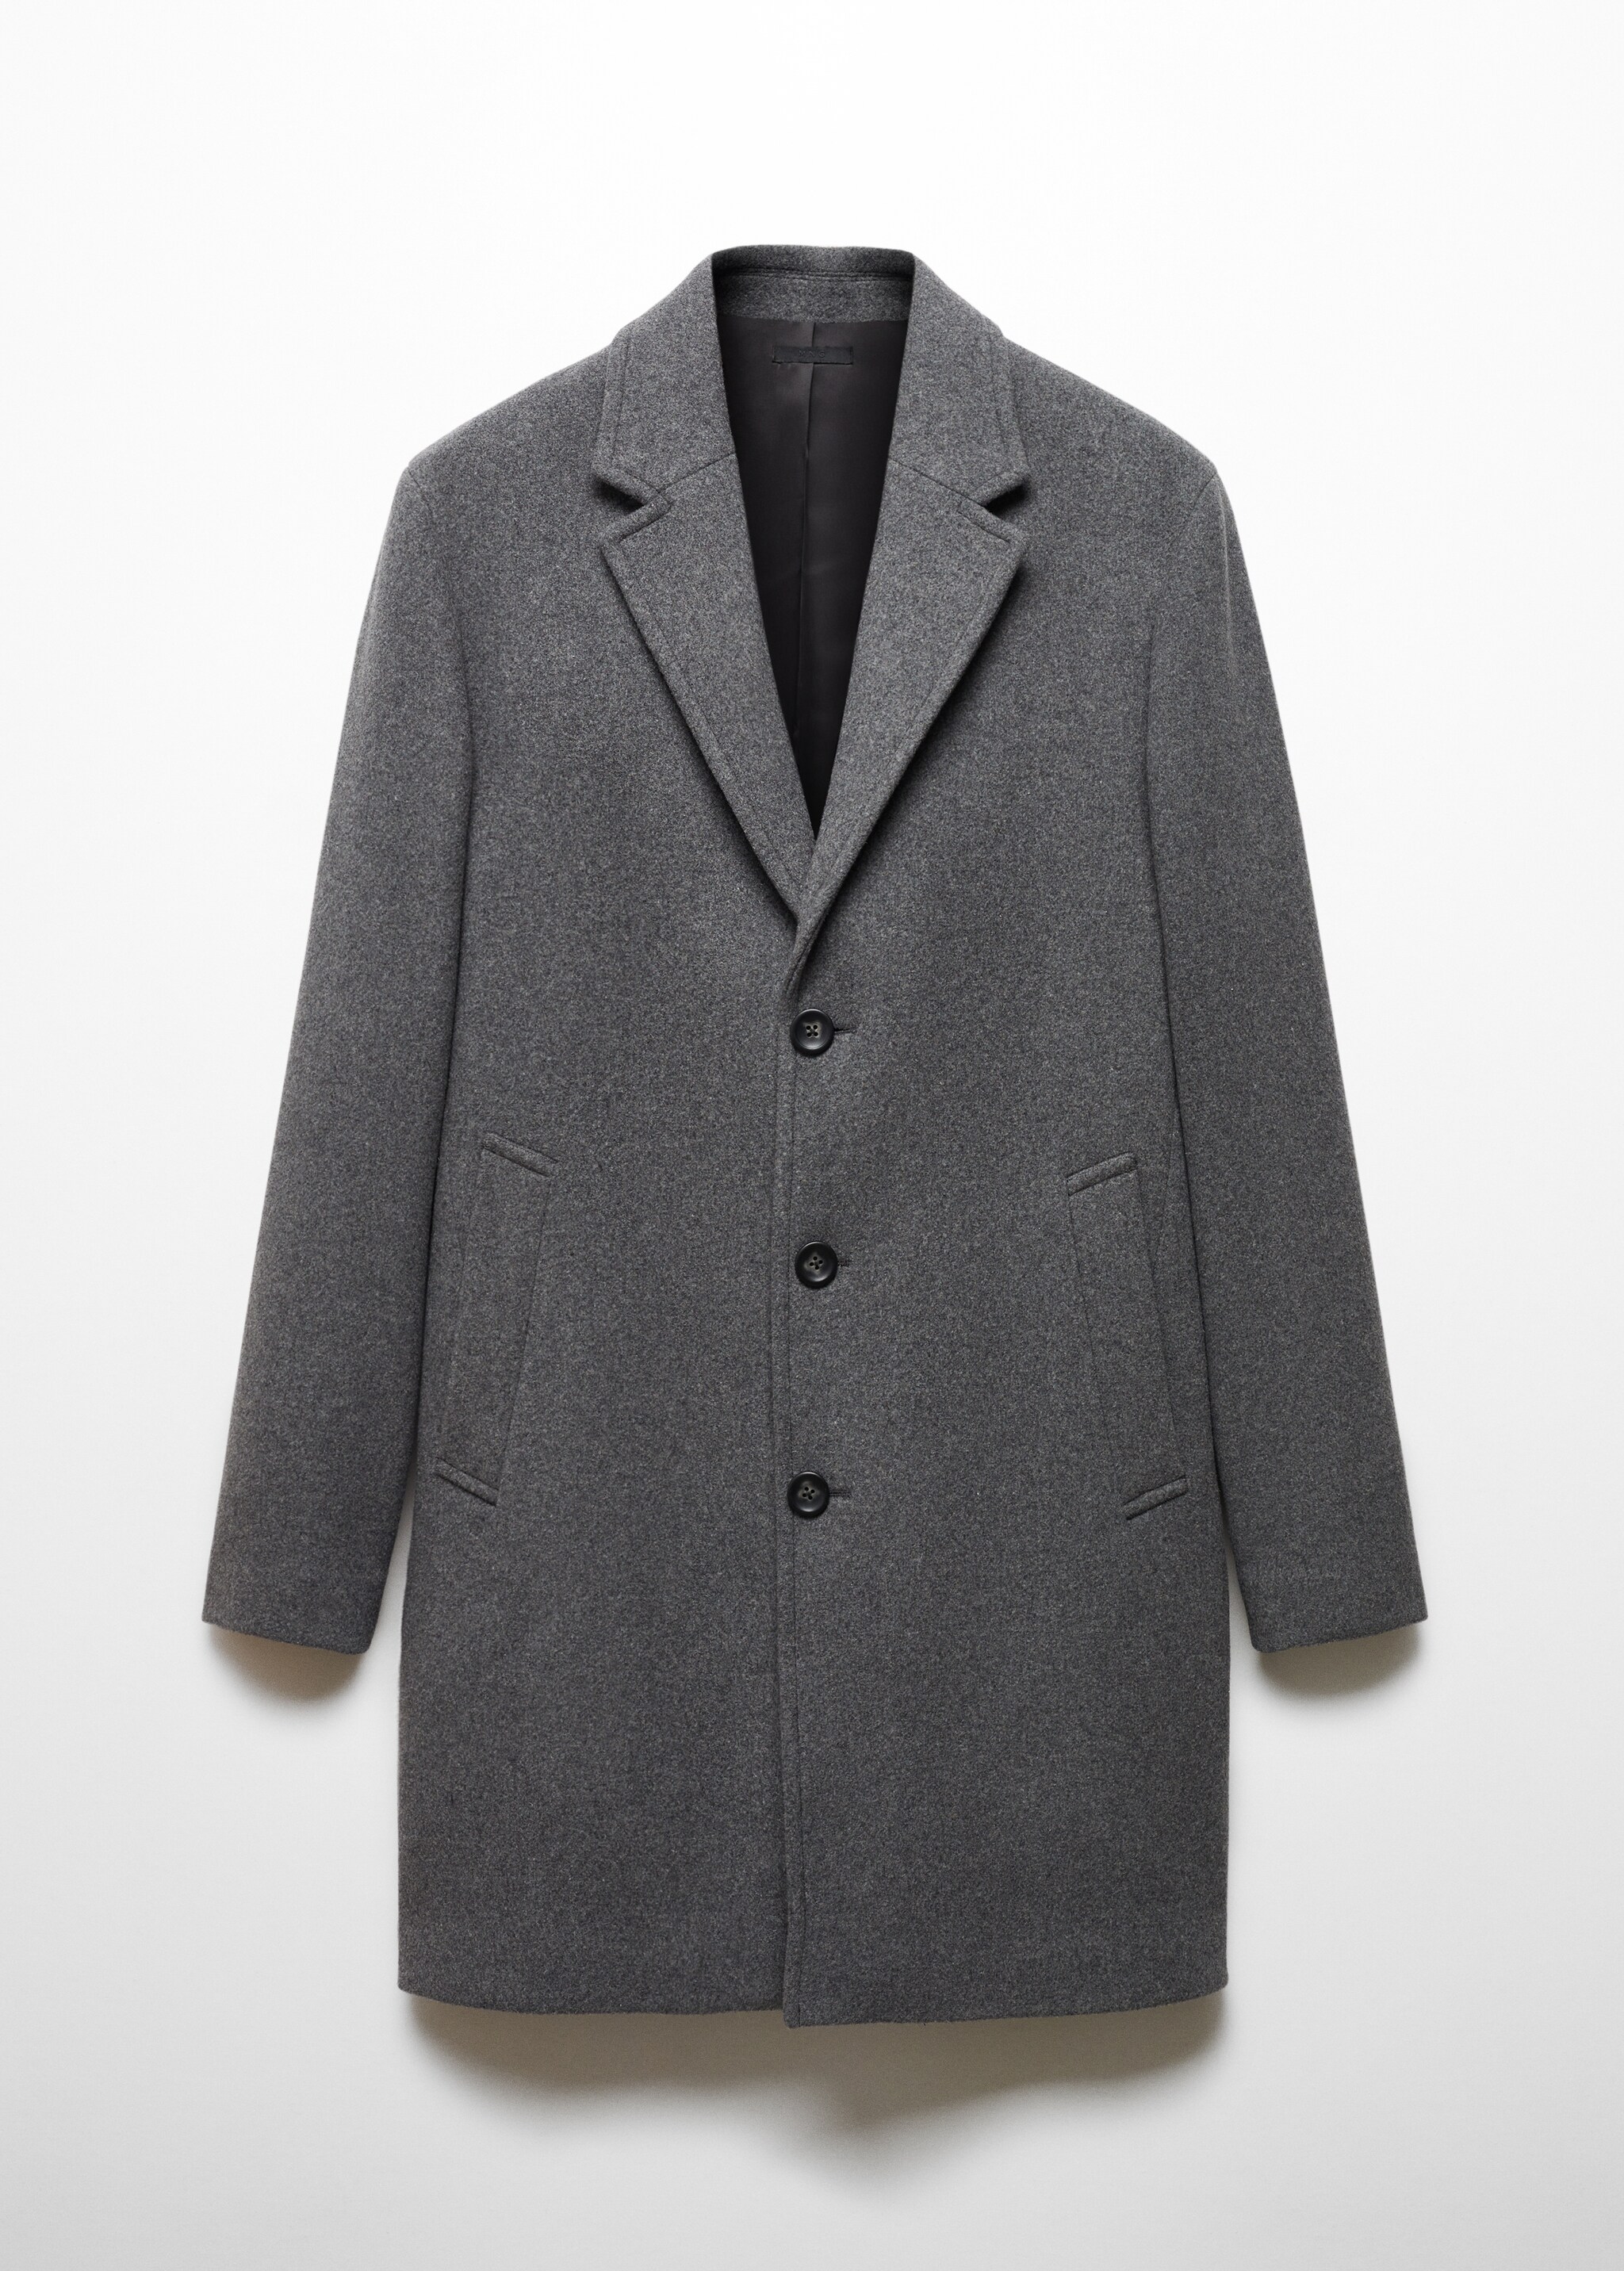 Легкое пальто из переработанной шерсти  - Изделие без модели